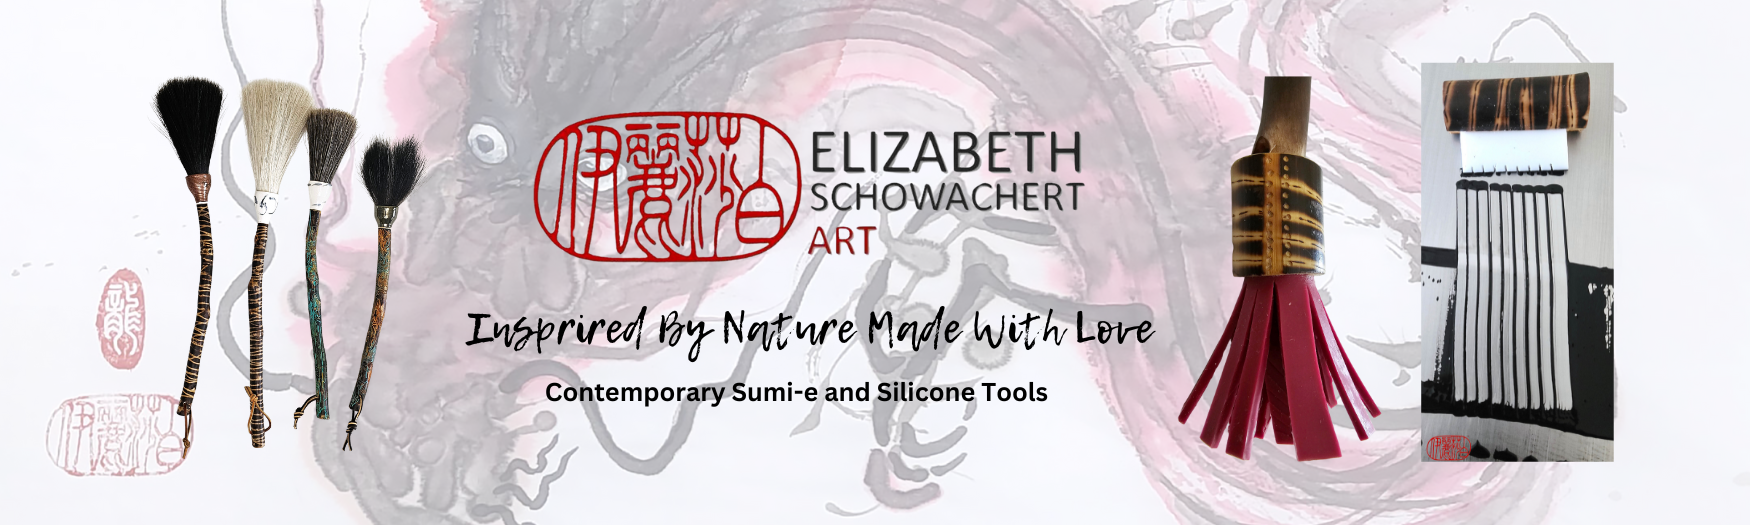 2 Hake Brush – Elizabeth Schowachert Art